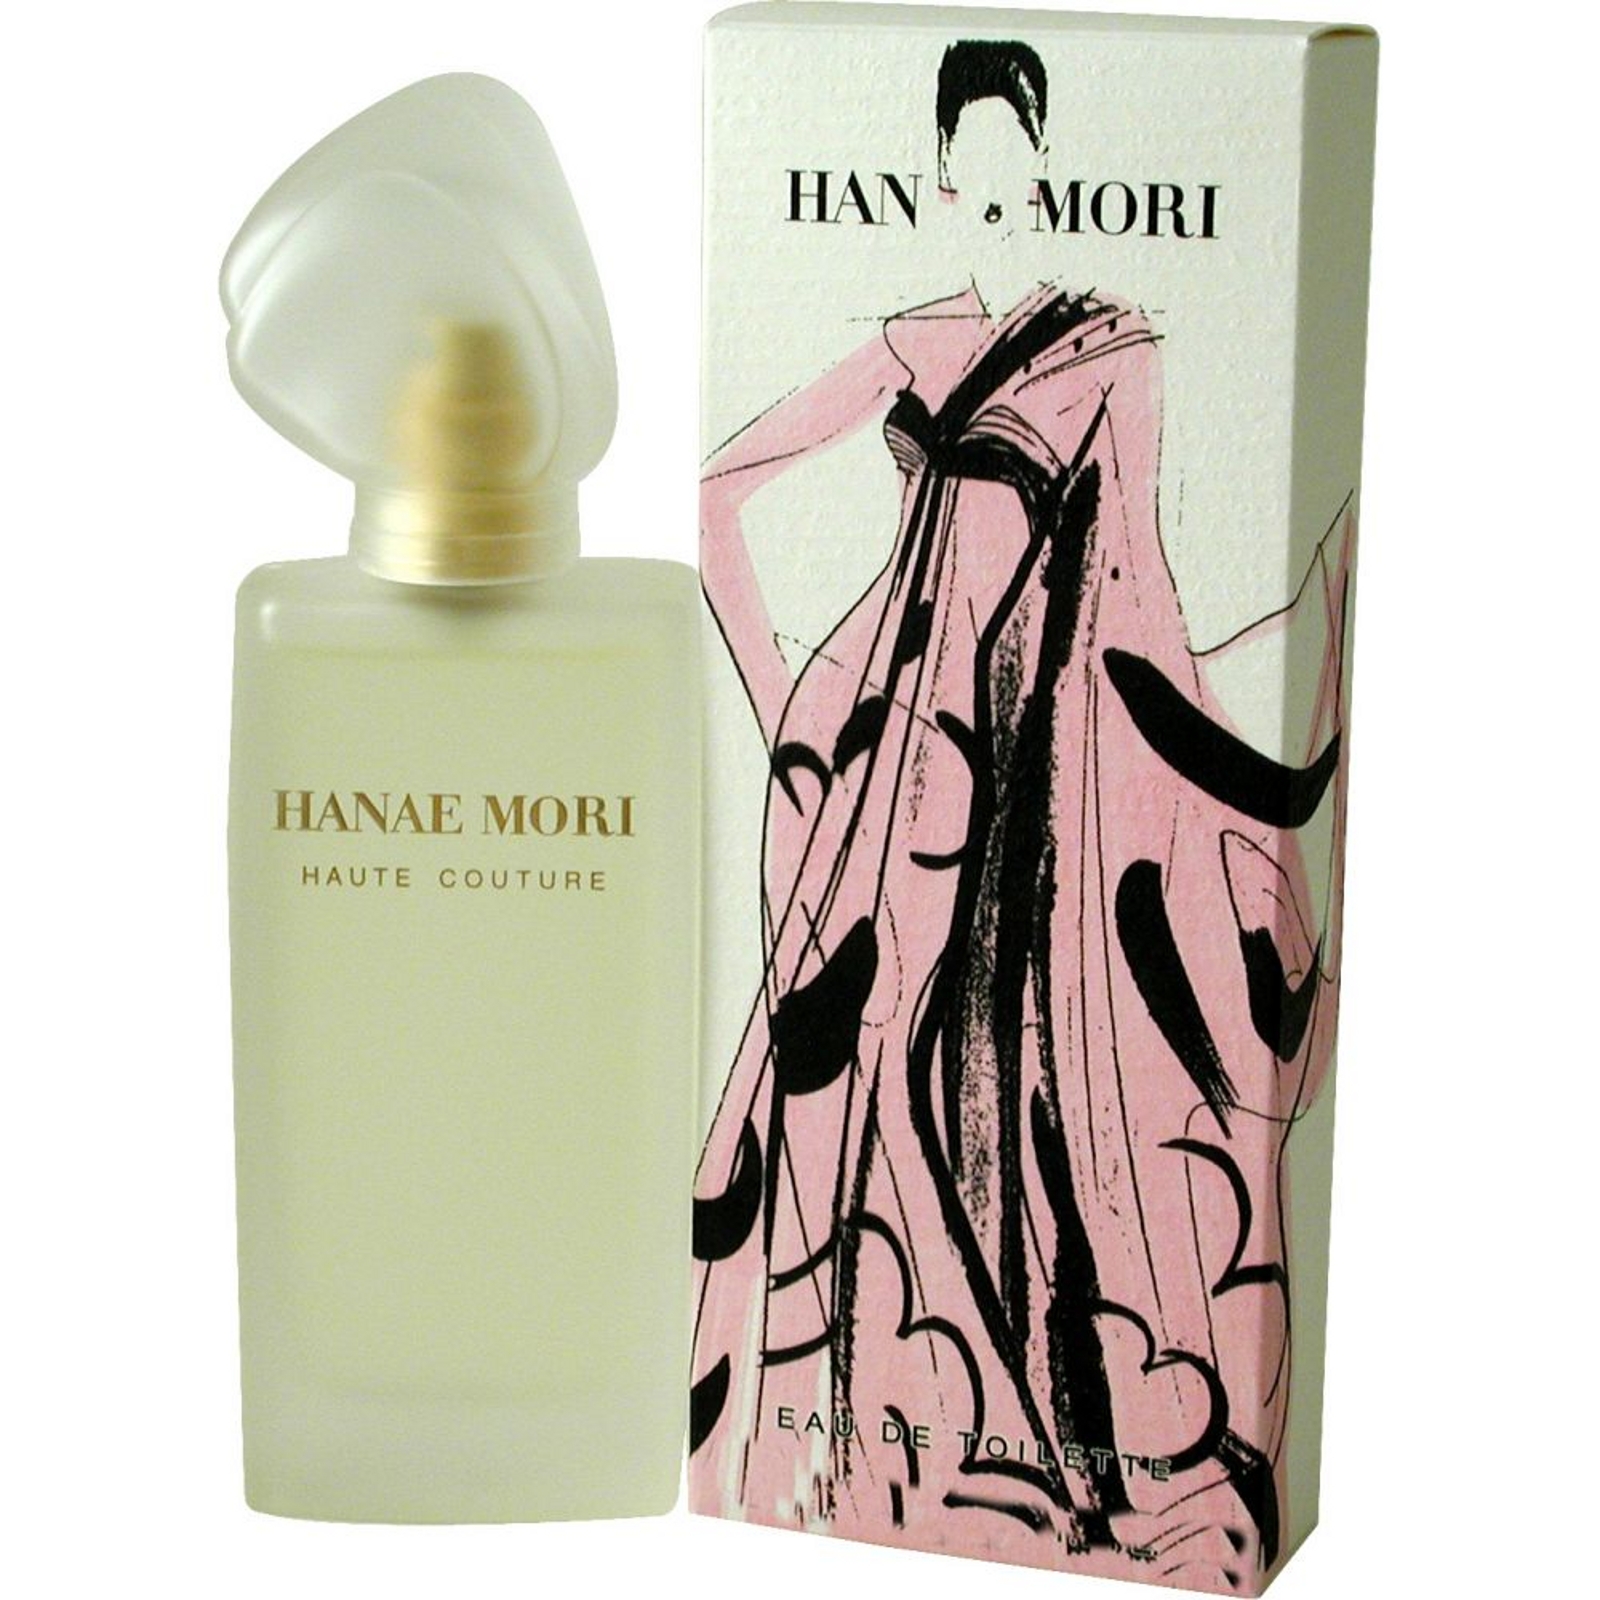 Hanae Mori Haute Couture by Hanae Mori EDT Spray 1.7 Oz for Women